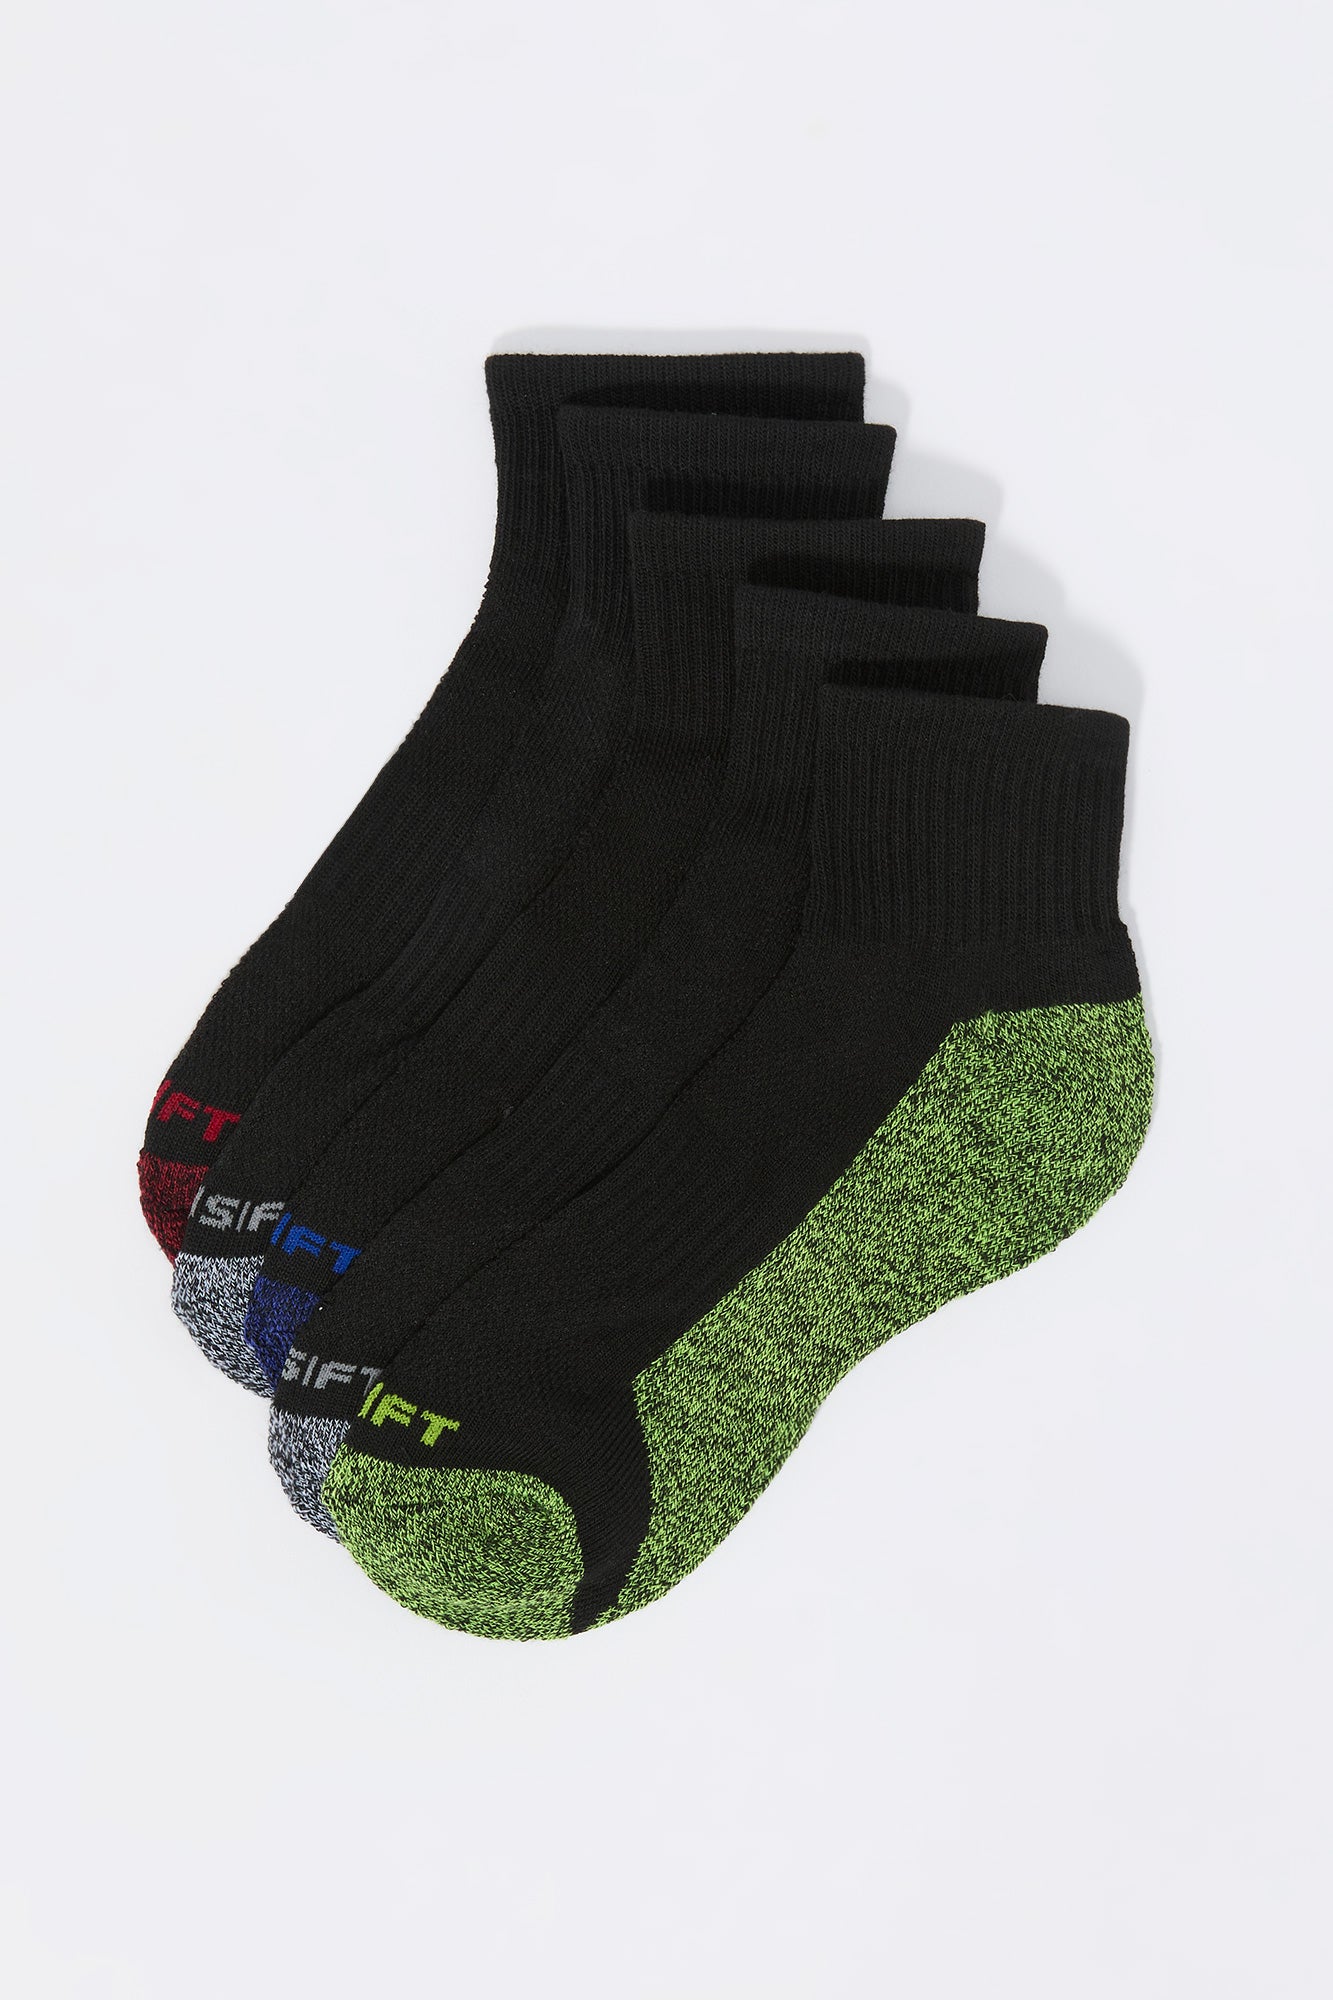 Boys Assorted Quarter Socks (5 Pack)